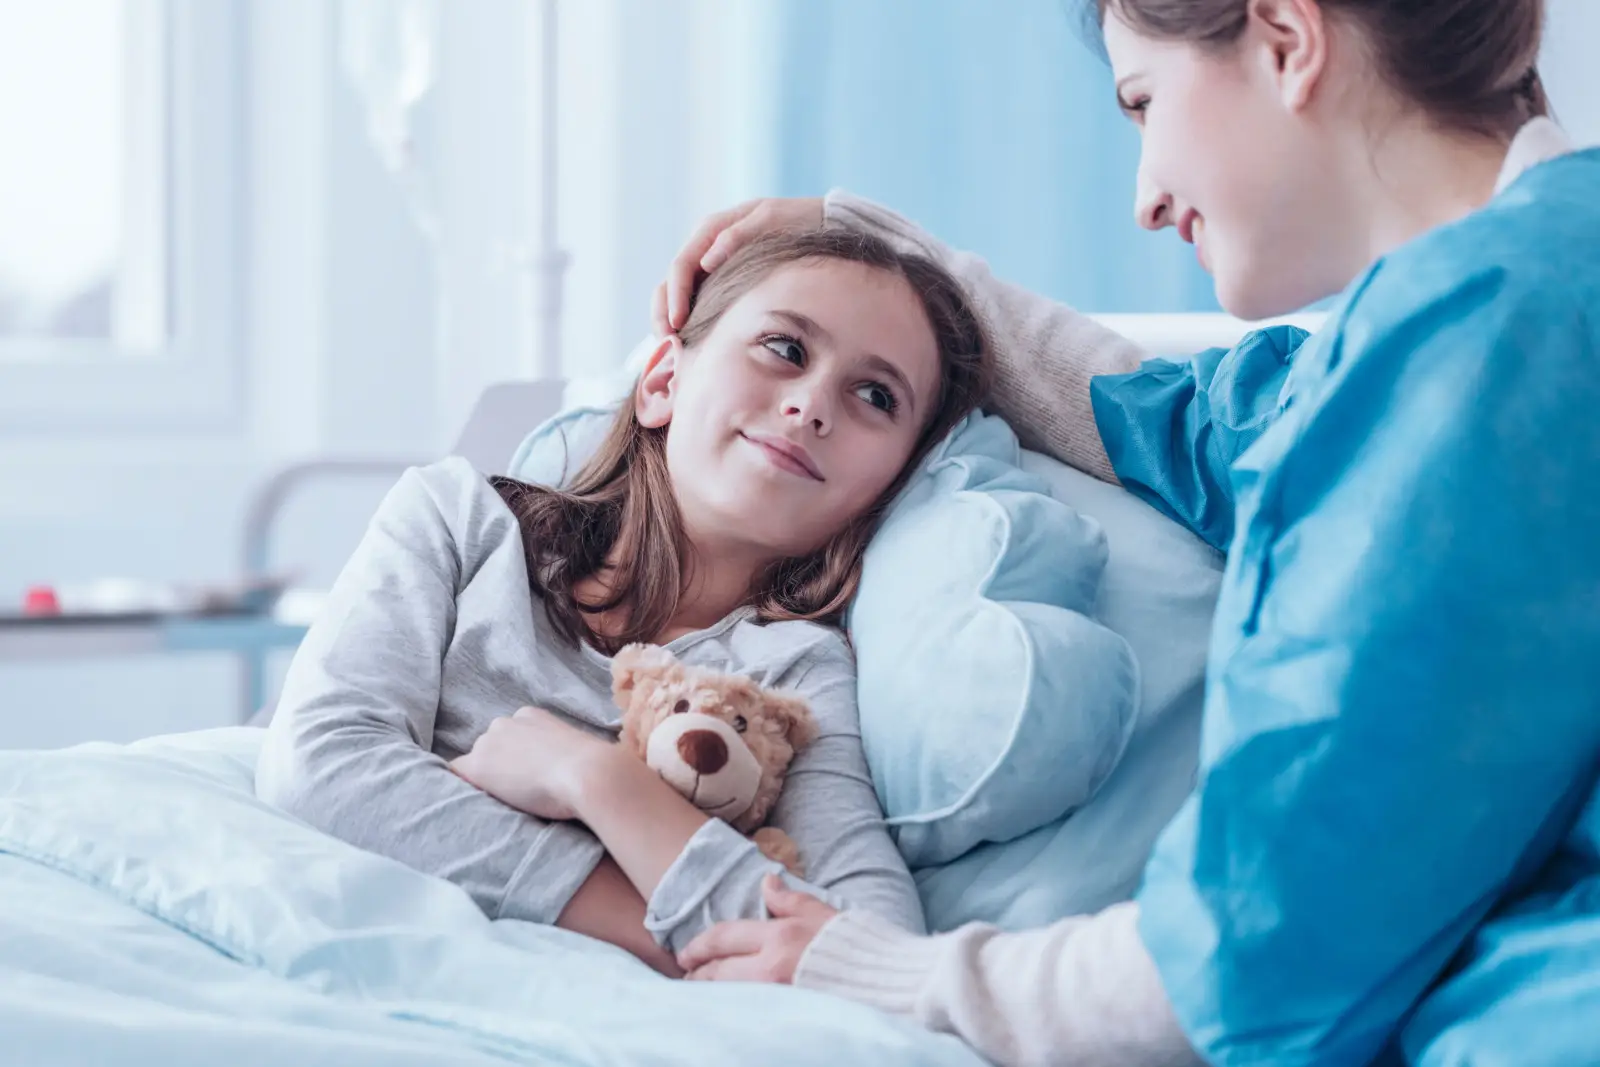 ما هي أسباب التهاب الغدة النكافية عند الأطفال وكيف يمكن علاجها؟